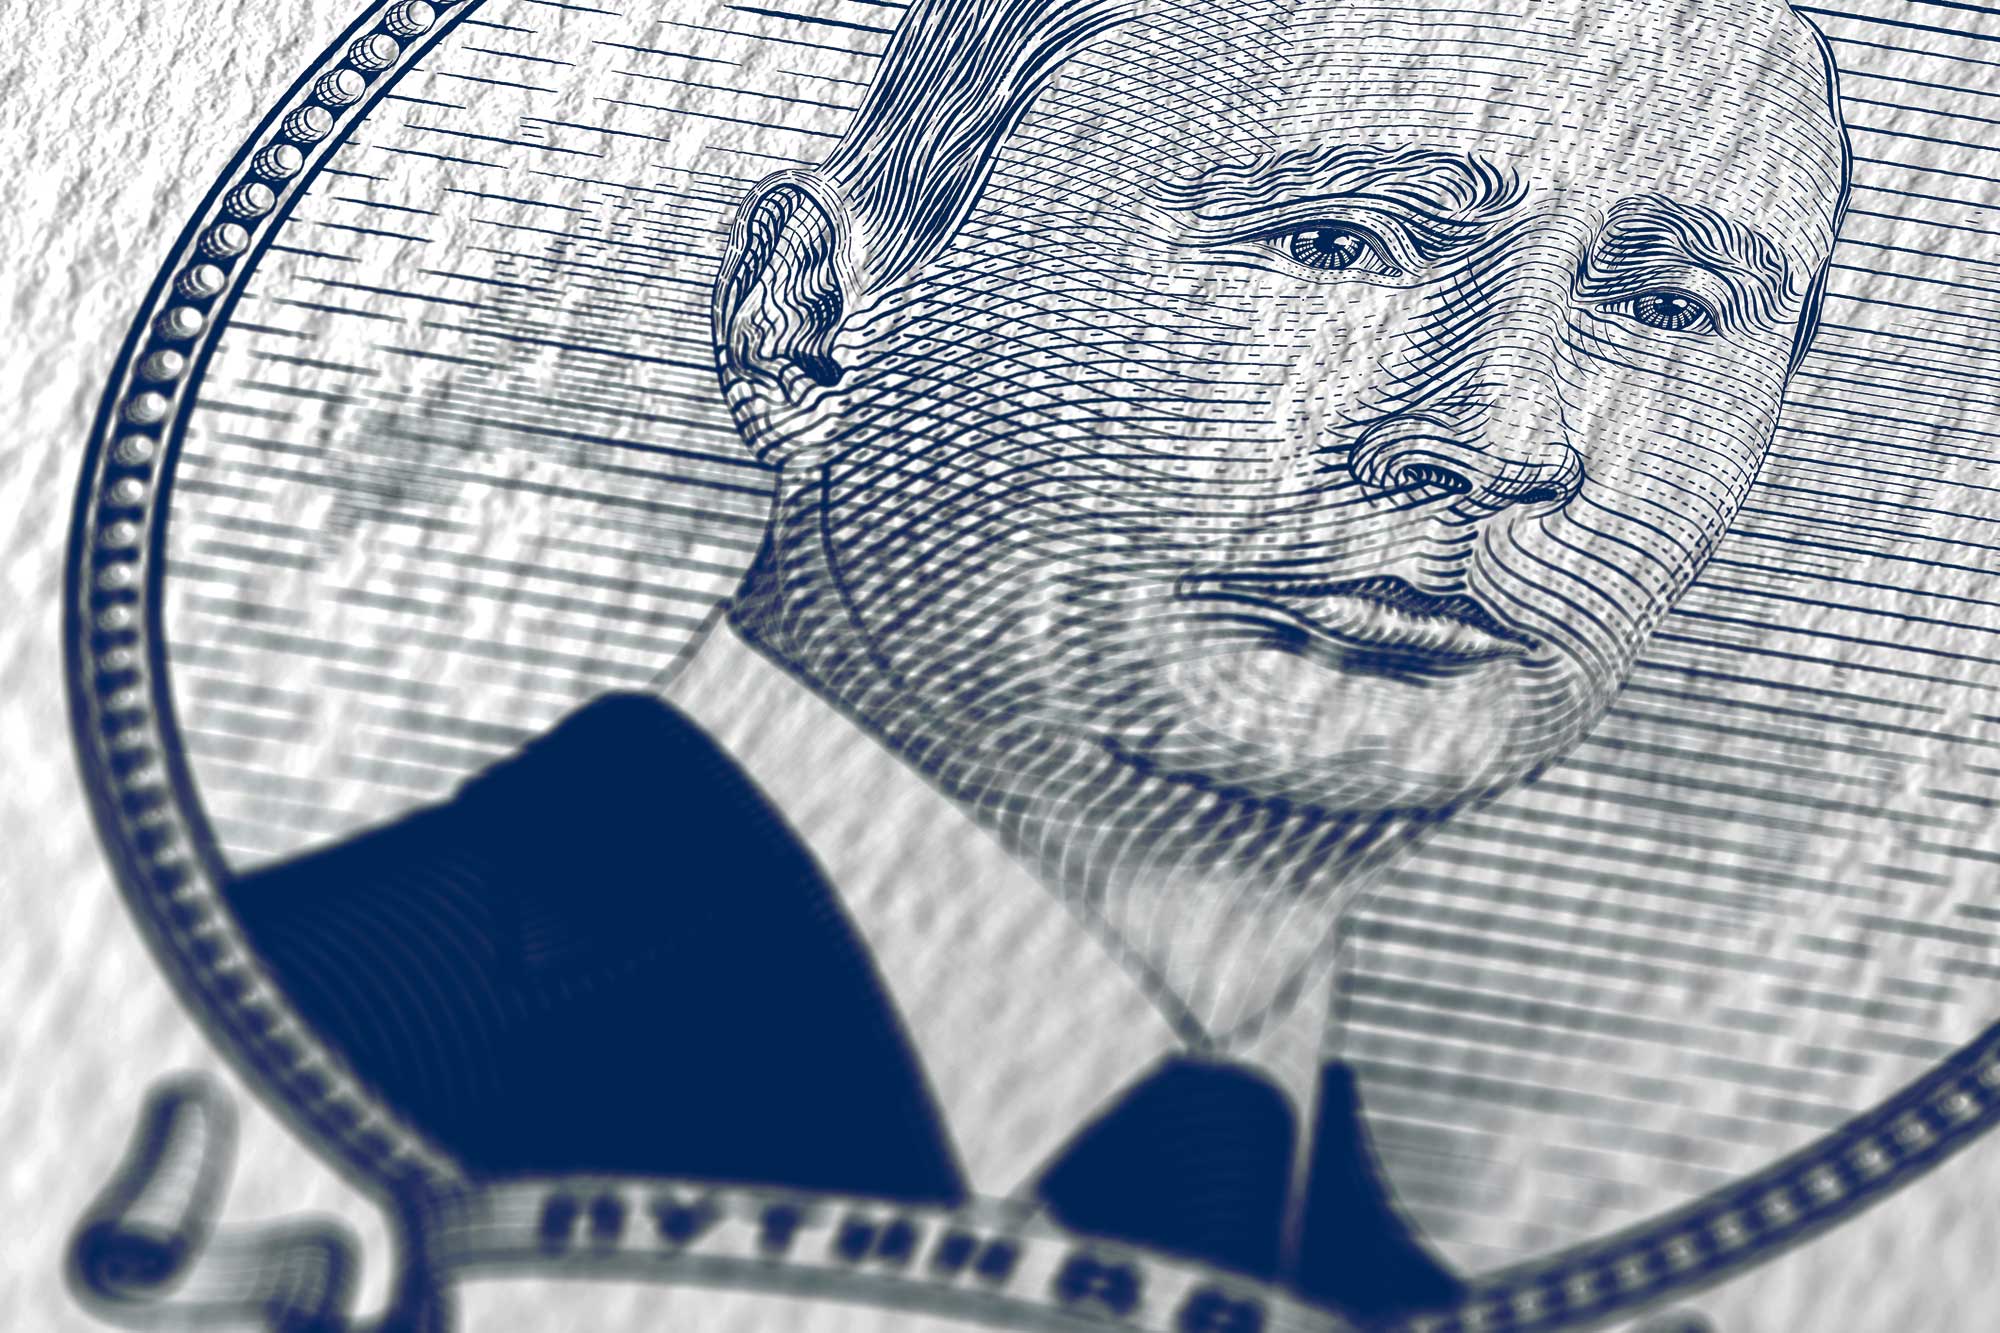 Putin's face on money